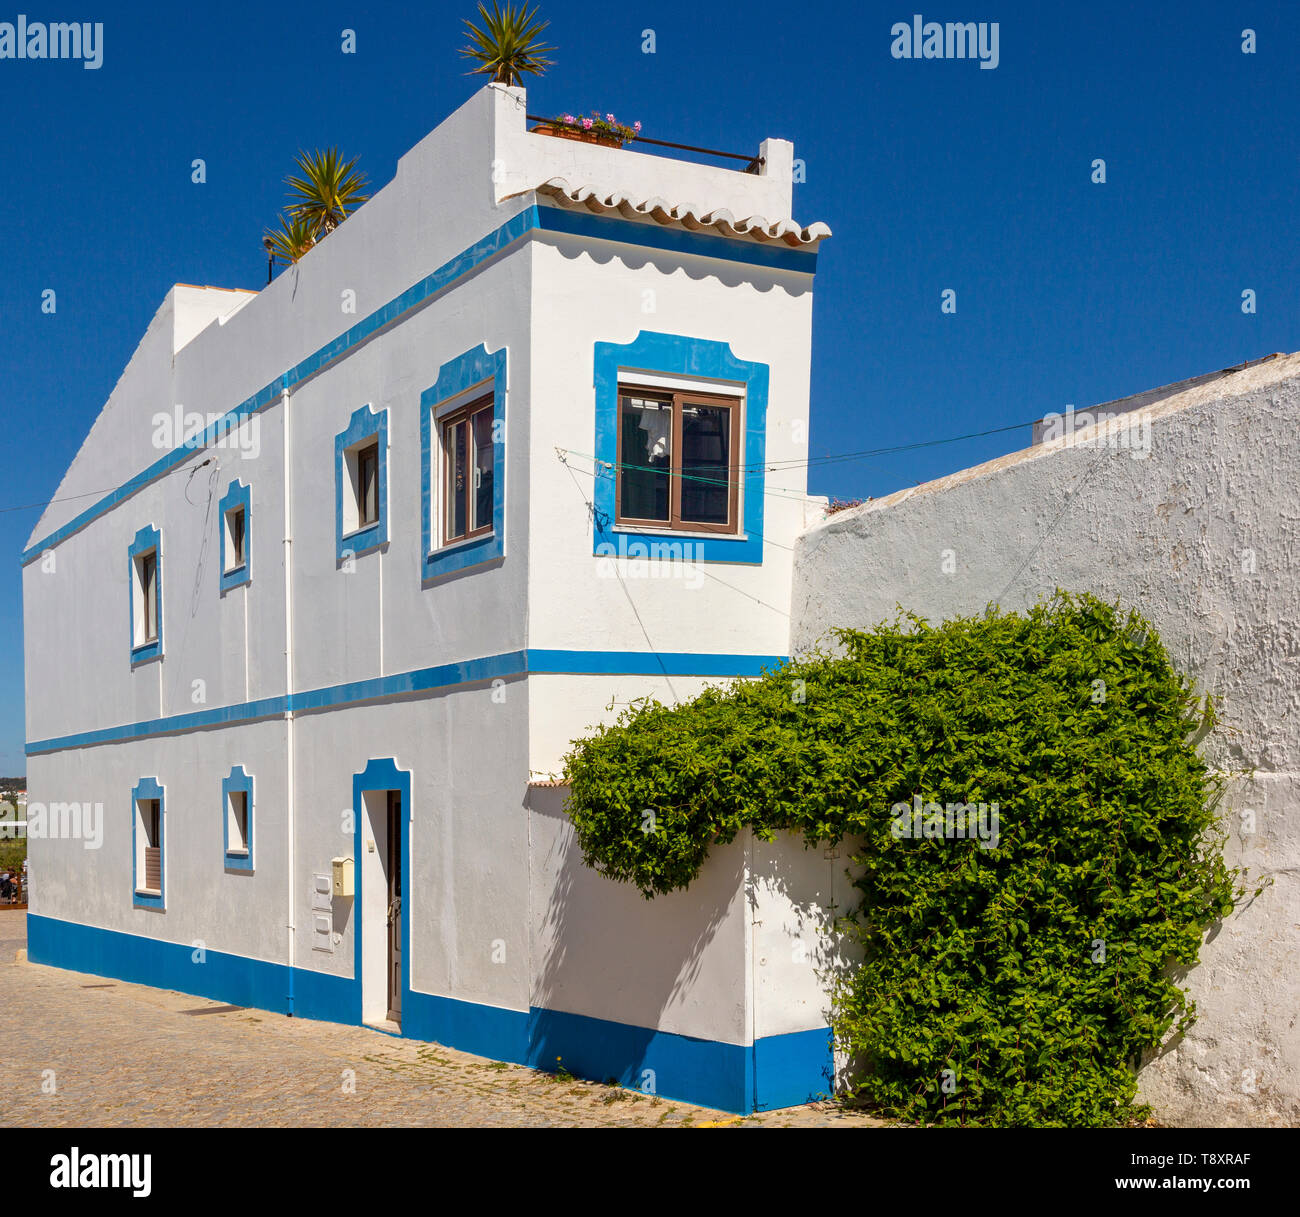 Traditionelle Architektur Gebäude Stil mit weiß getünchten Wänden und blau lackiert, Cacela Velha, Vila Real de Santo António, Algarve, Por Stockfoto